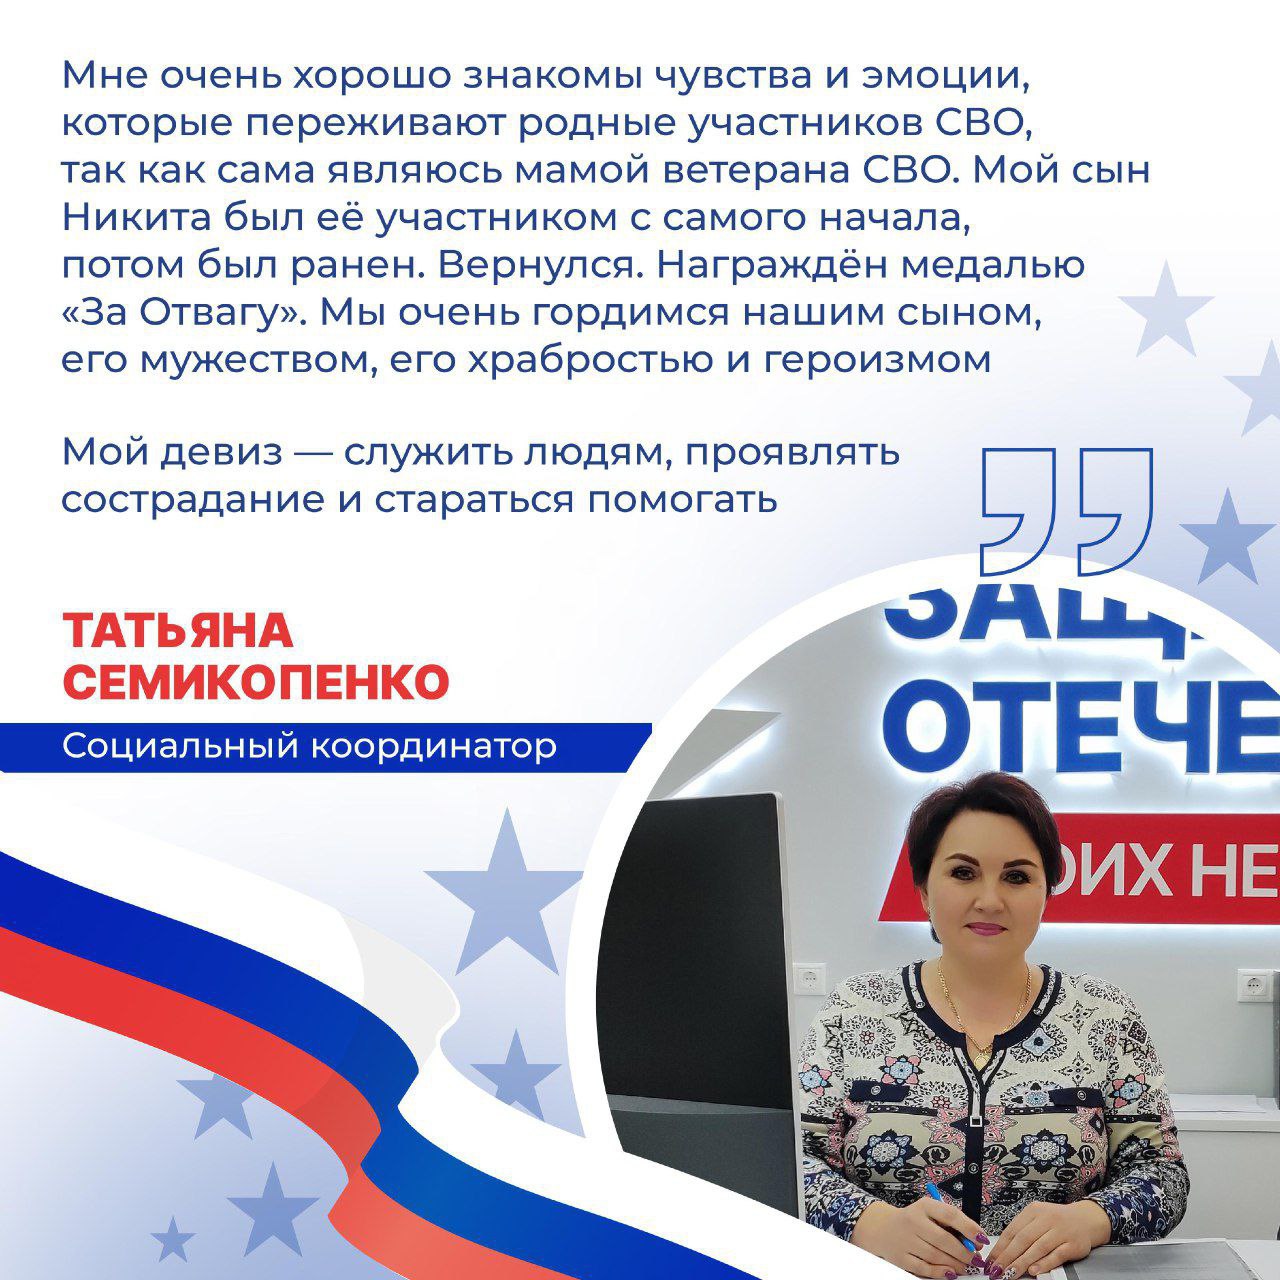 Краснояружцы могут обратиться к социальному координатору по нашему району Татьяне Семикопенко по вопросам помощи семьям и участникам СВО.